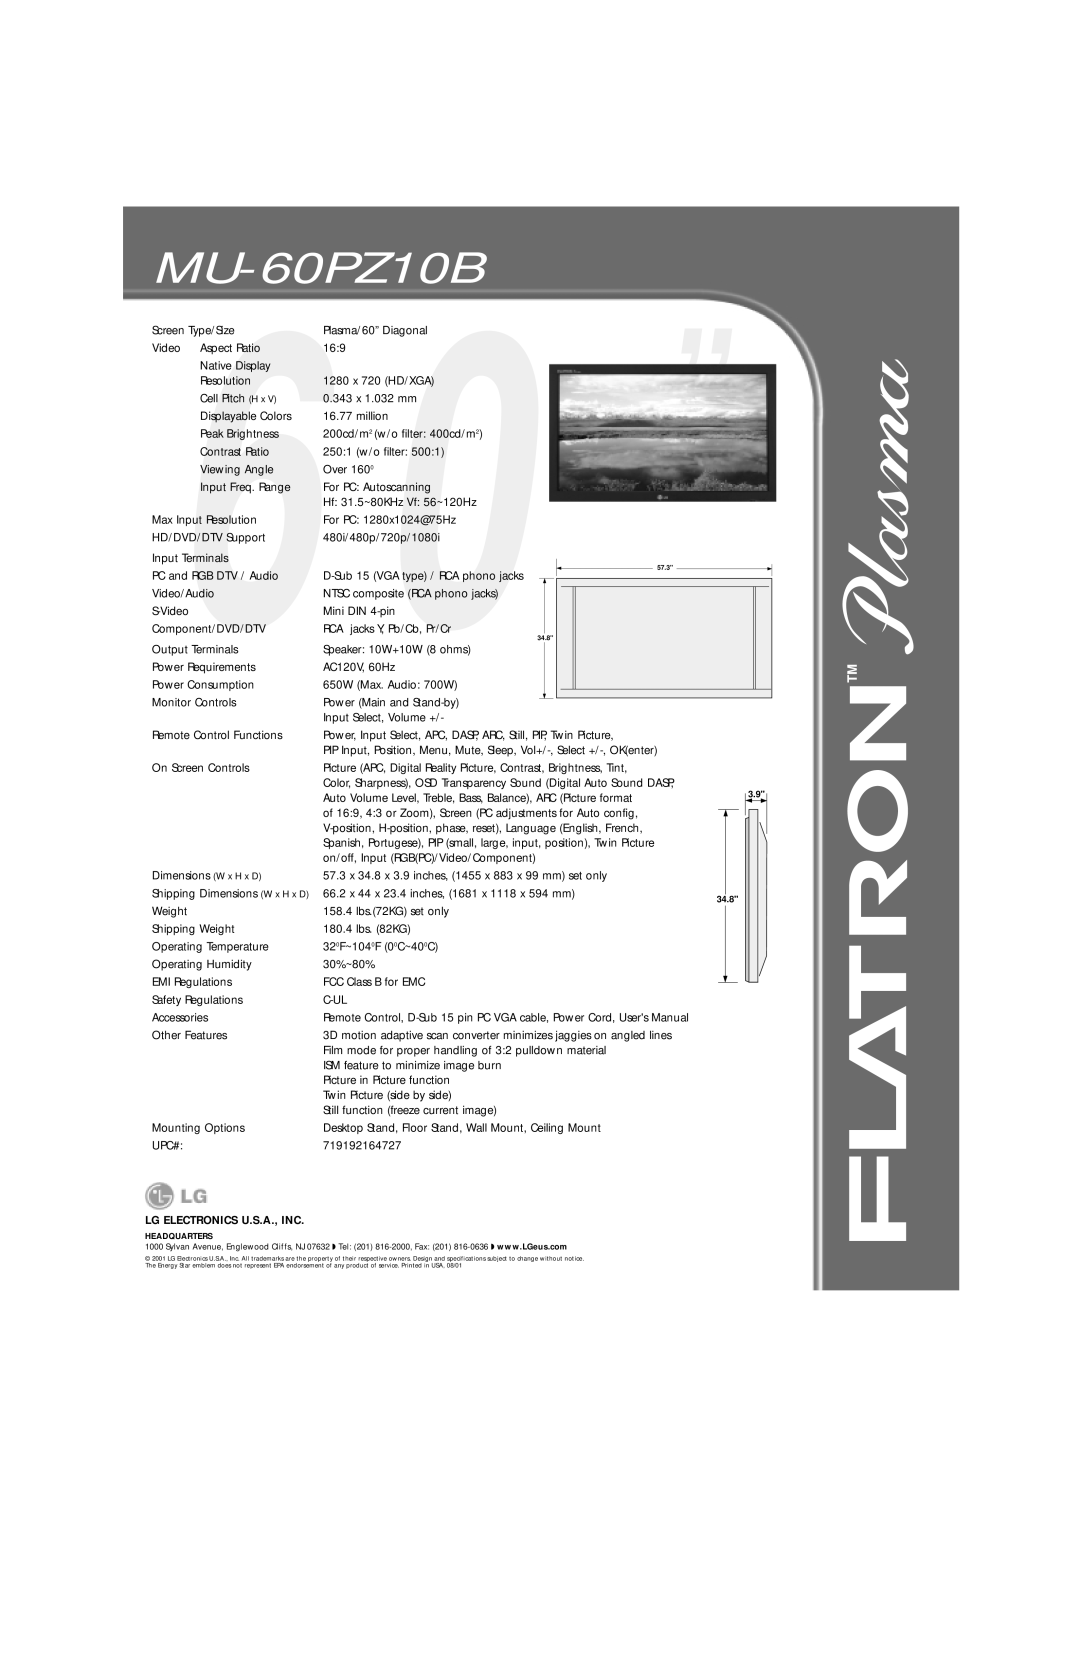 LG Electronics MU-60PZ10B manual Lg Electronics U.S.A., Inc 